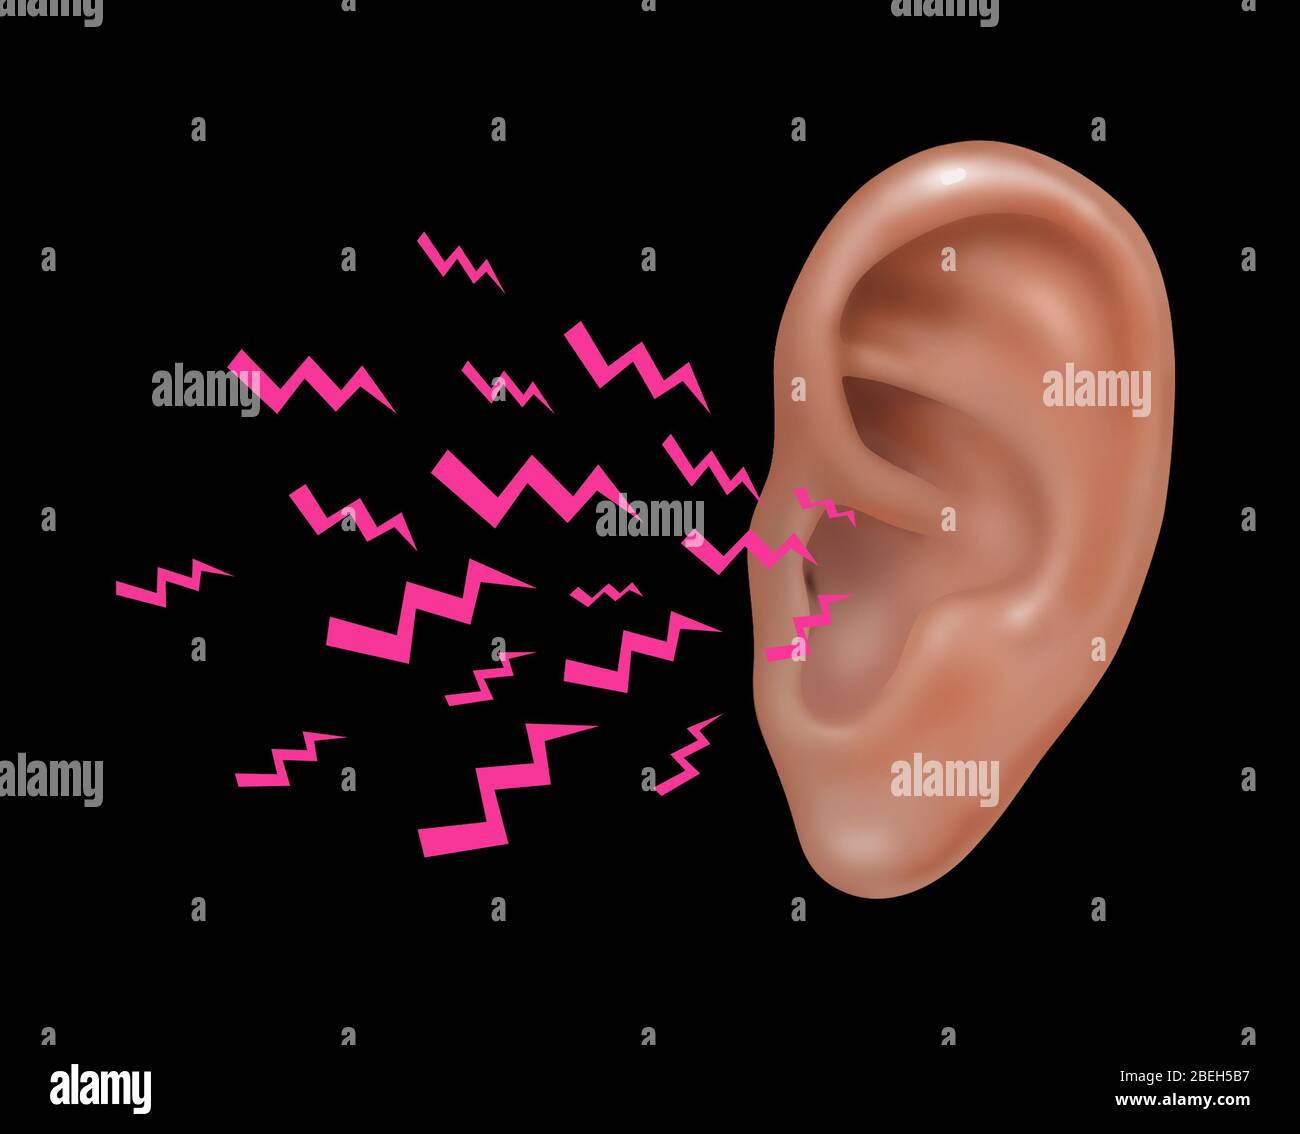 Sonido entrando en el oído externo humano, Ilustración Foto de stock